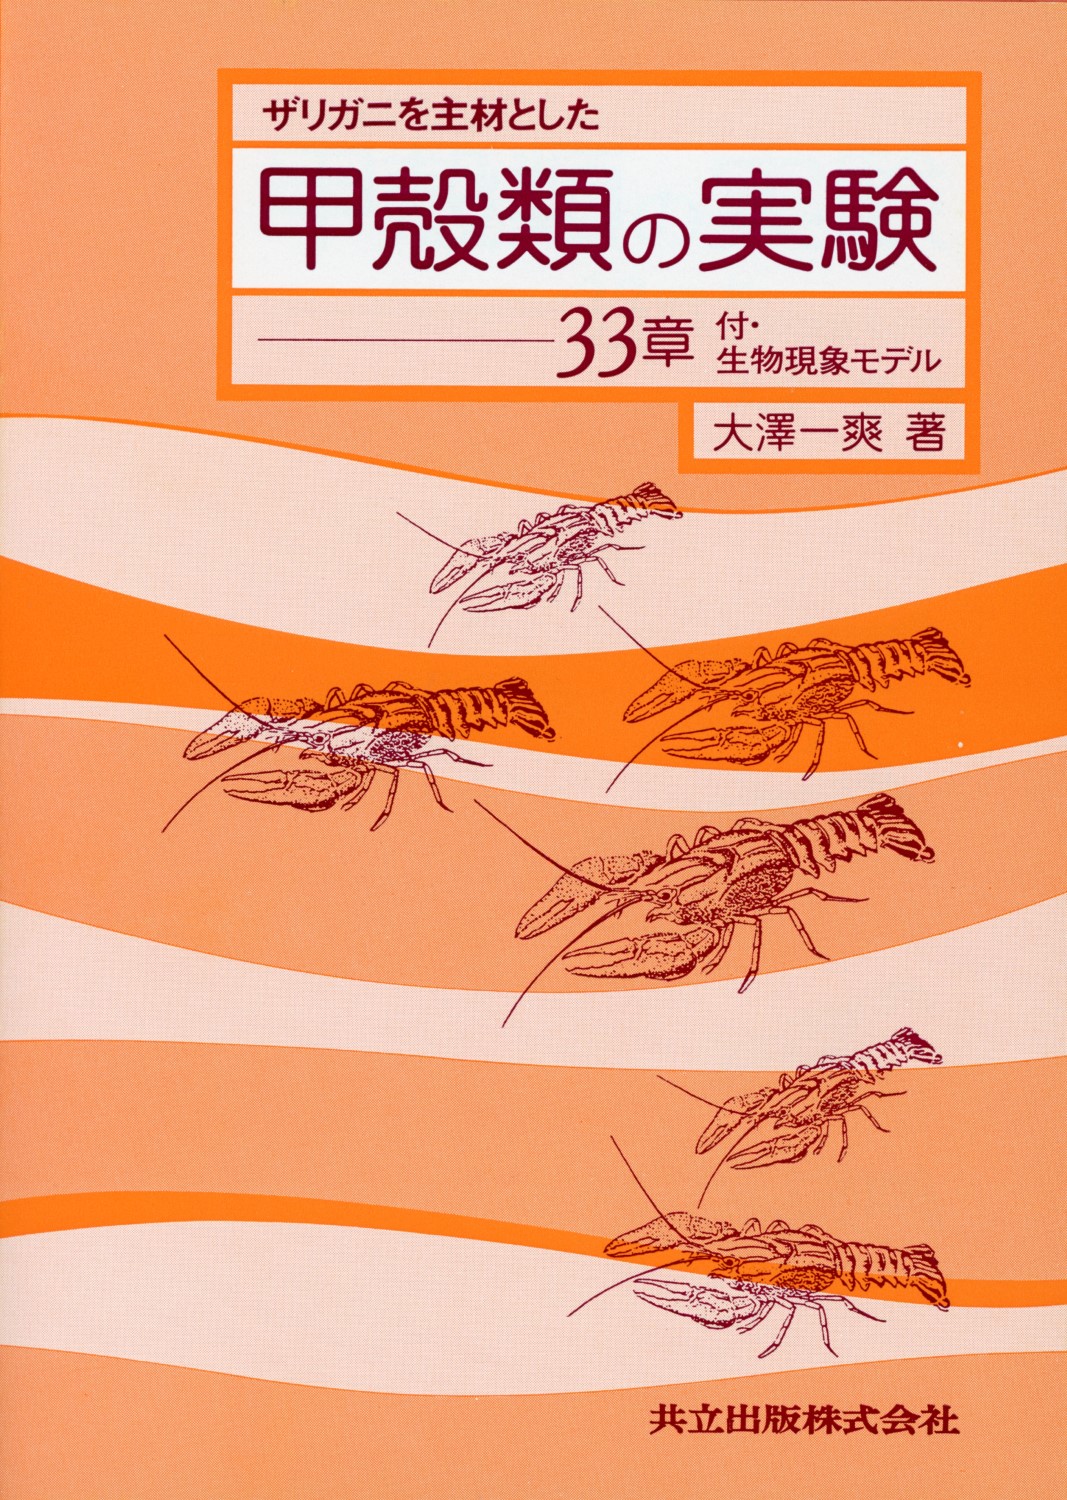 ザリガニを主材とした甲殻類の実験―33章の商品画像